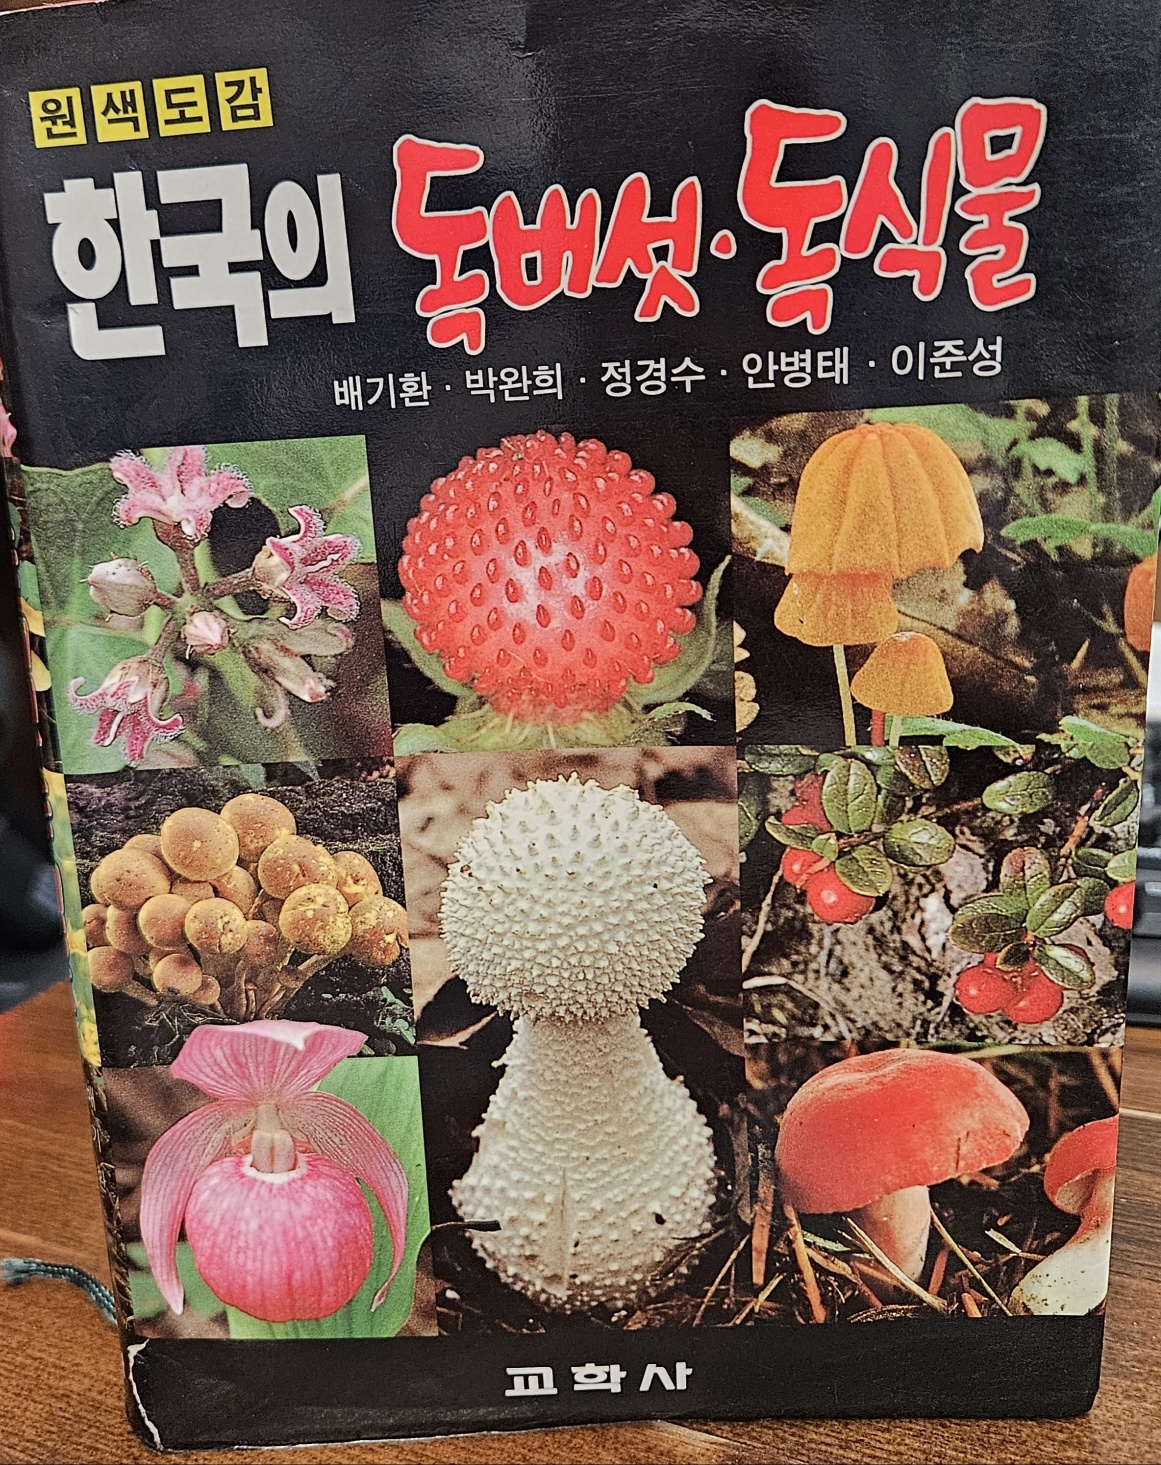 한국의 독버섯 독식물